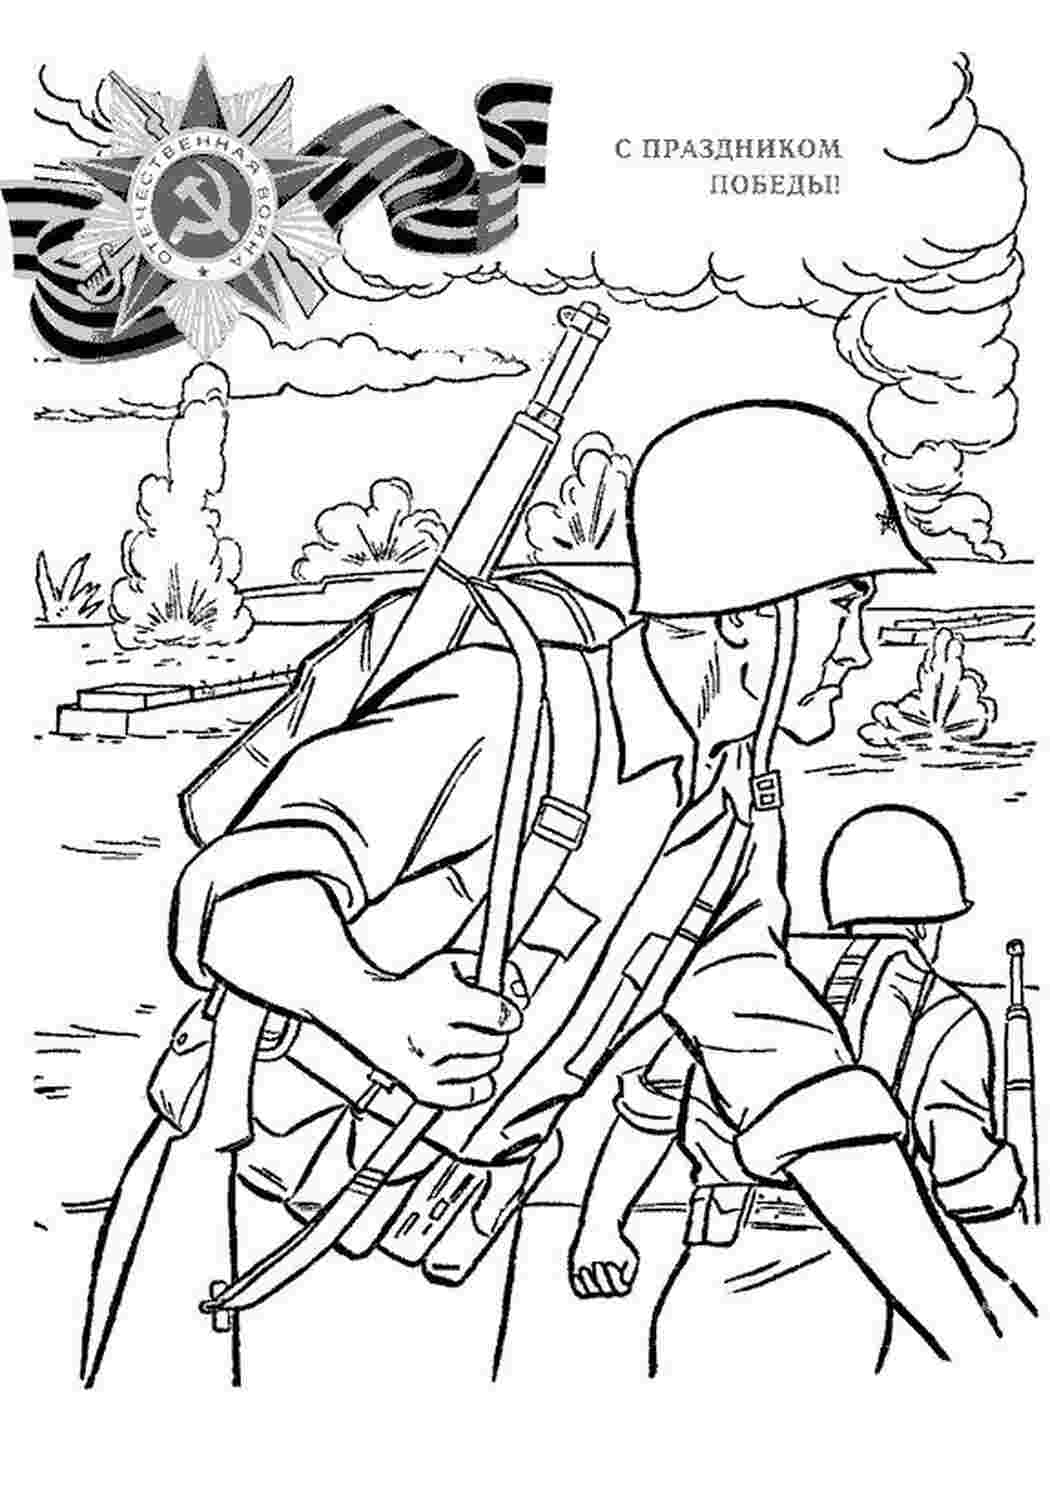 Раскраски картинки на рабочий стол онлайн С праздником победы, поле боя, военные действия, солдаты Раскраски для мальчиков